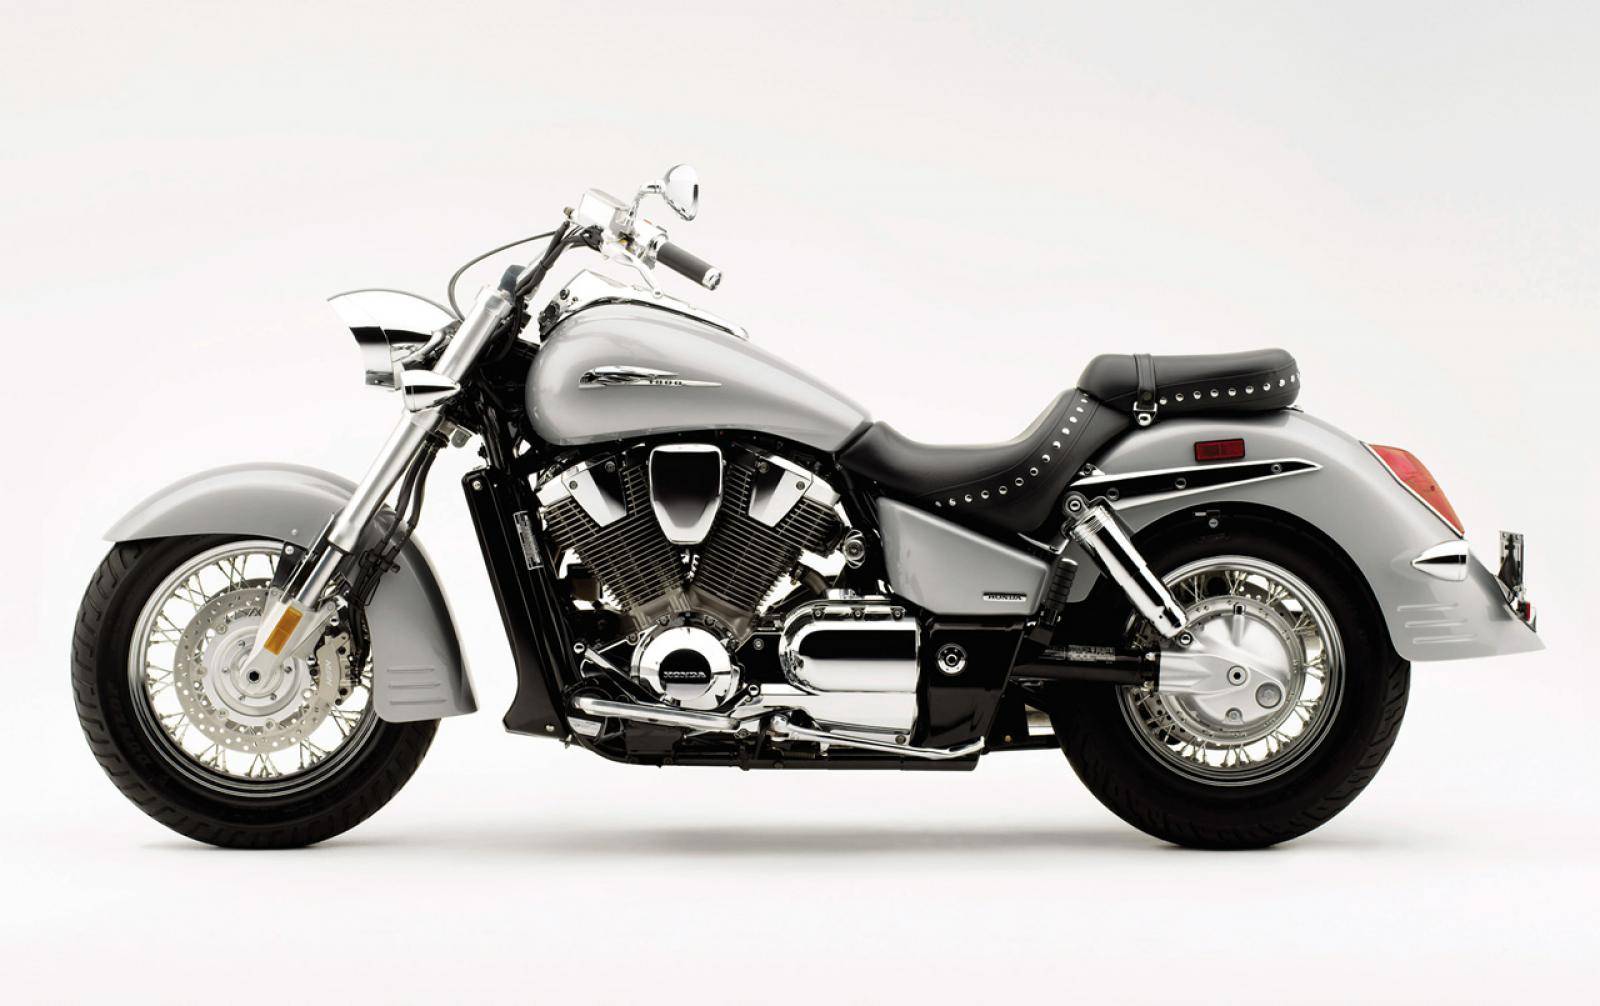 Honda vtx 1800 - обзор, технические характеристики | mymot - каталог мотоциклов и все объявления об их продаже в одном месте